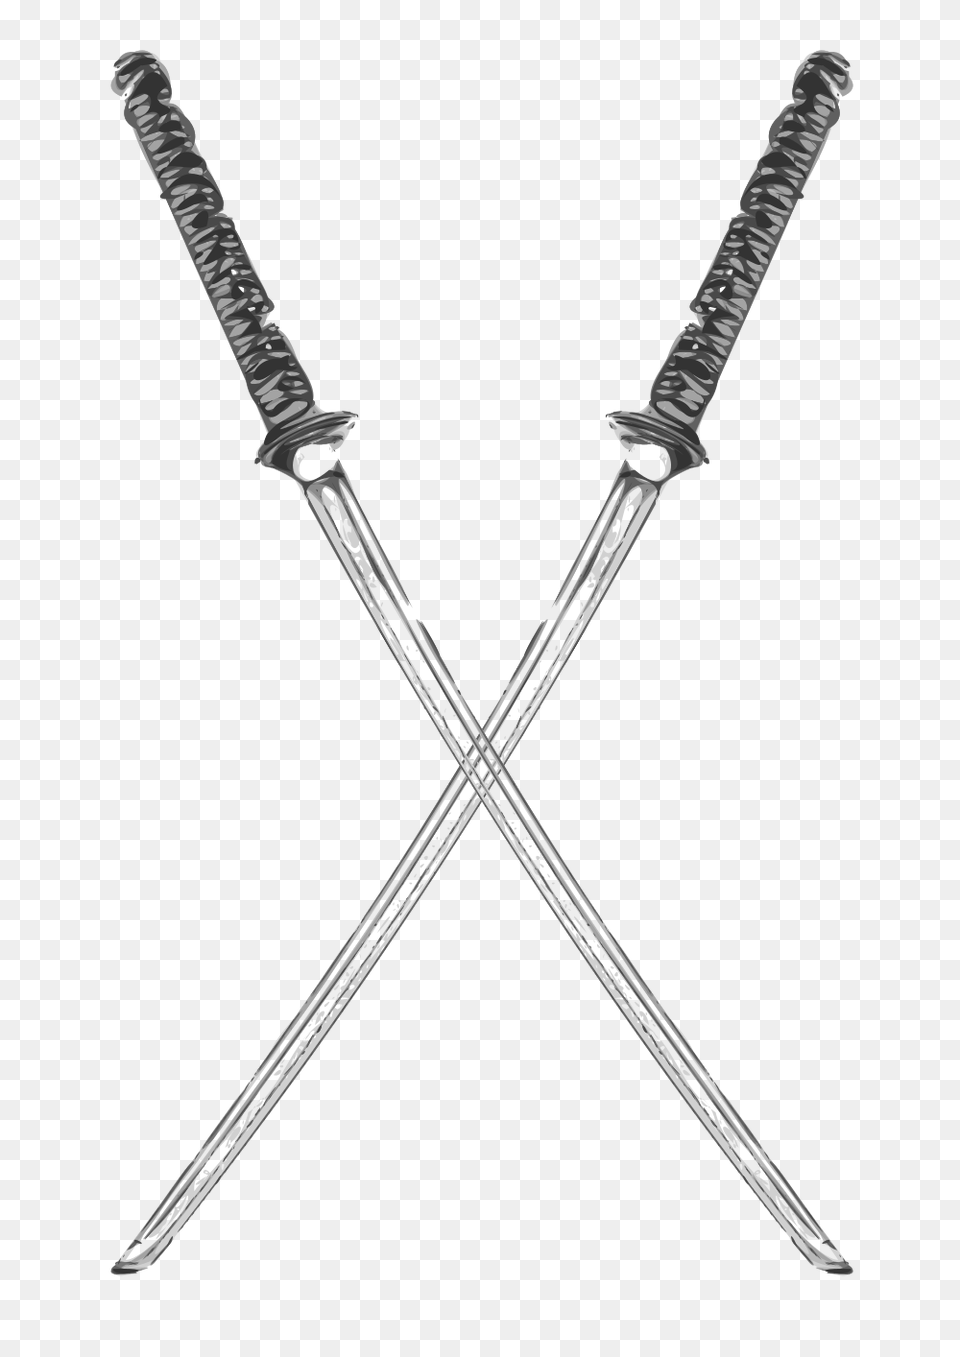 Katana, Sword, Weapon, Blade, Dagger Png